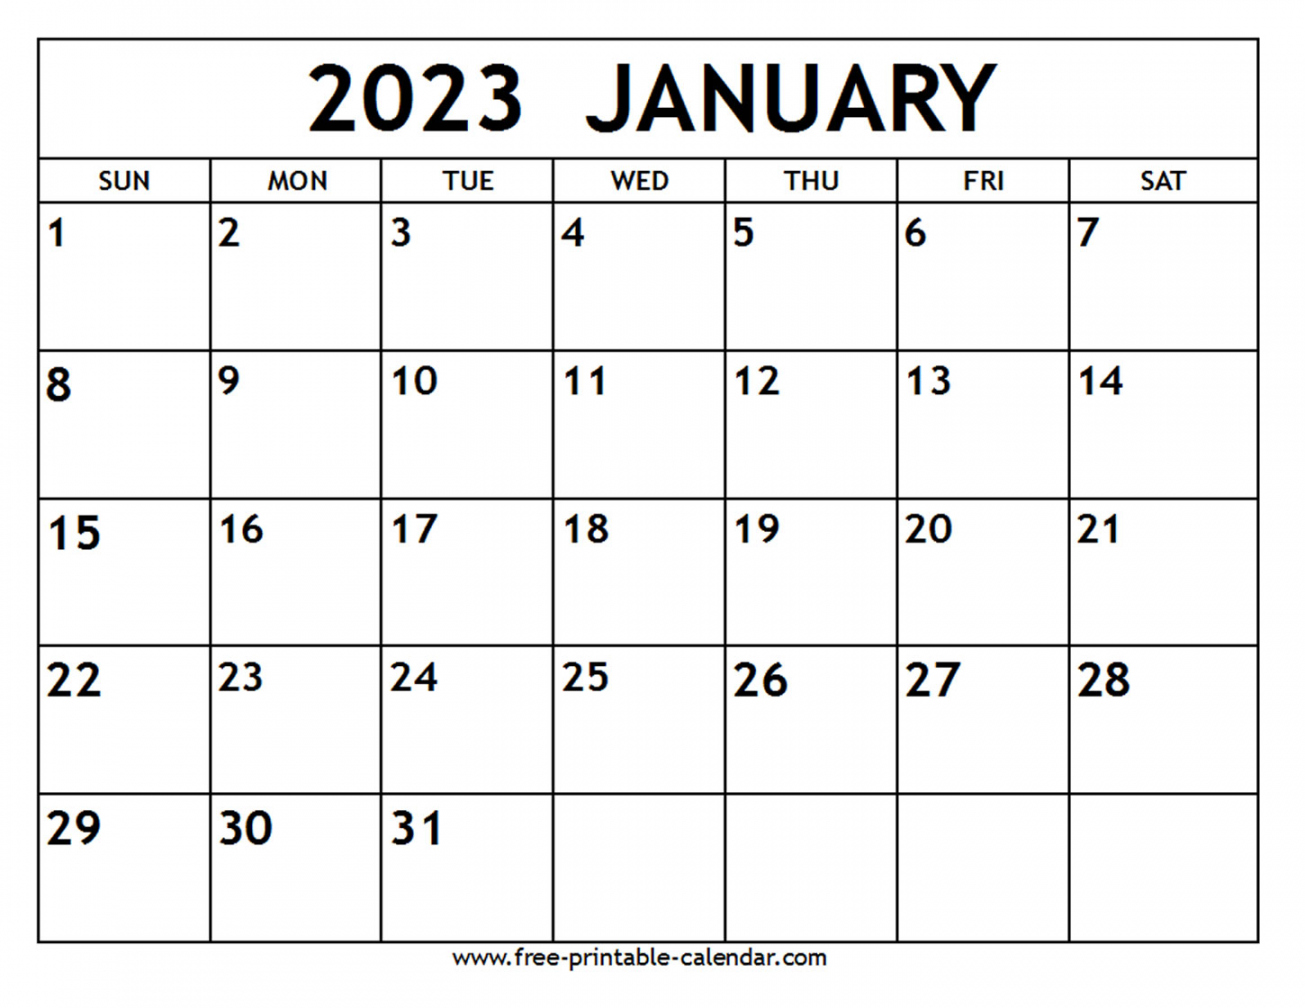 January 2023 Calendar Free Printable - Printable - January  Calendar - Free-printable-calendar